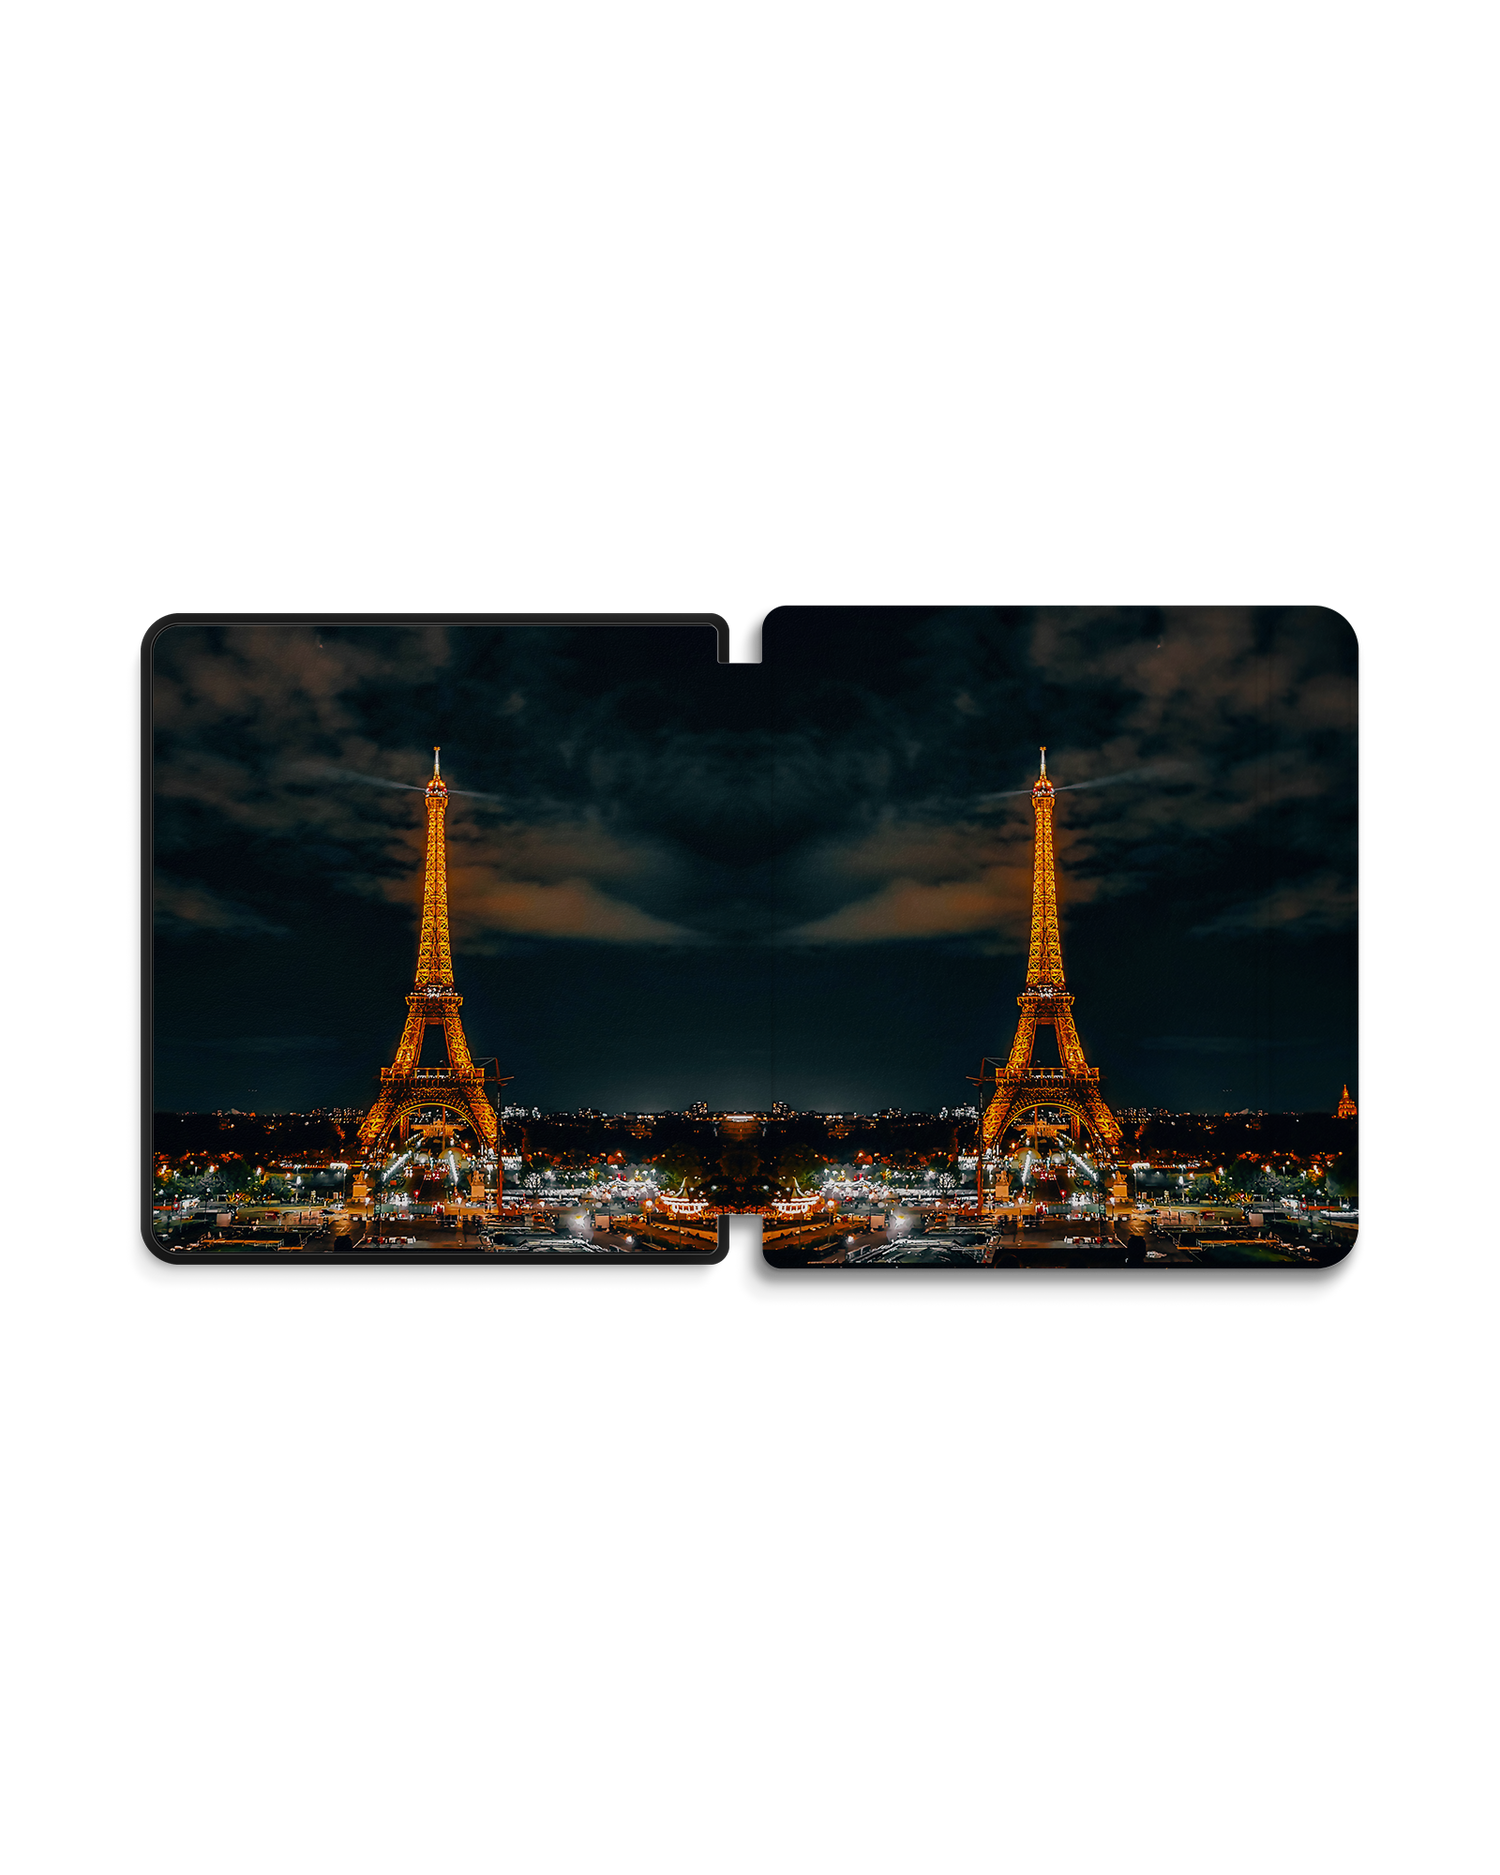 Eiffel Tower By Night eBook Reader Smart Case für tolino epos 2: Geöffnet Außenansicht